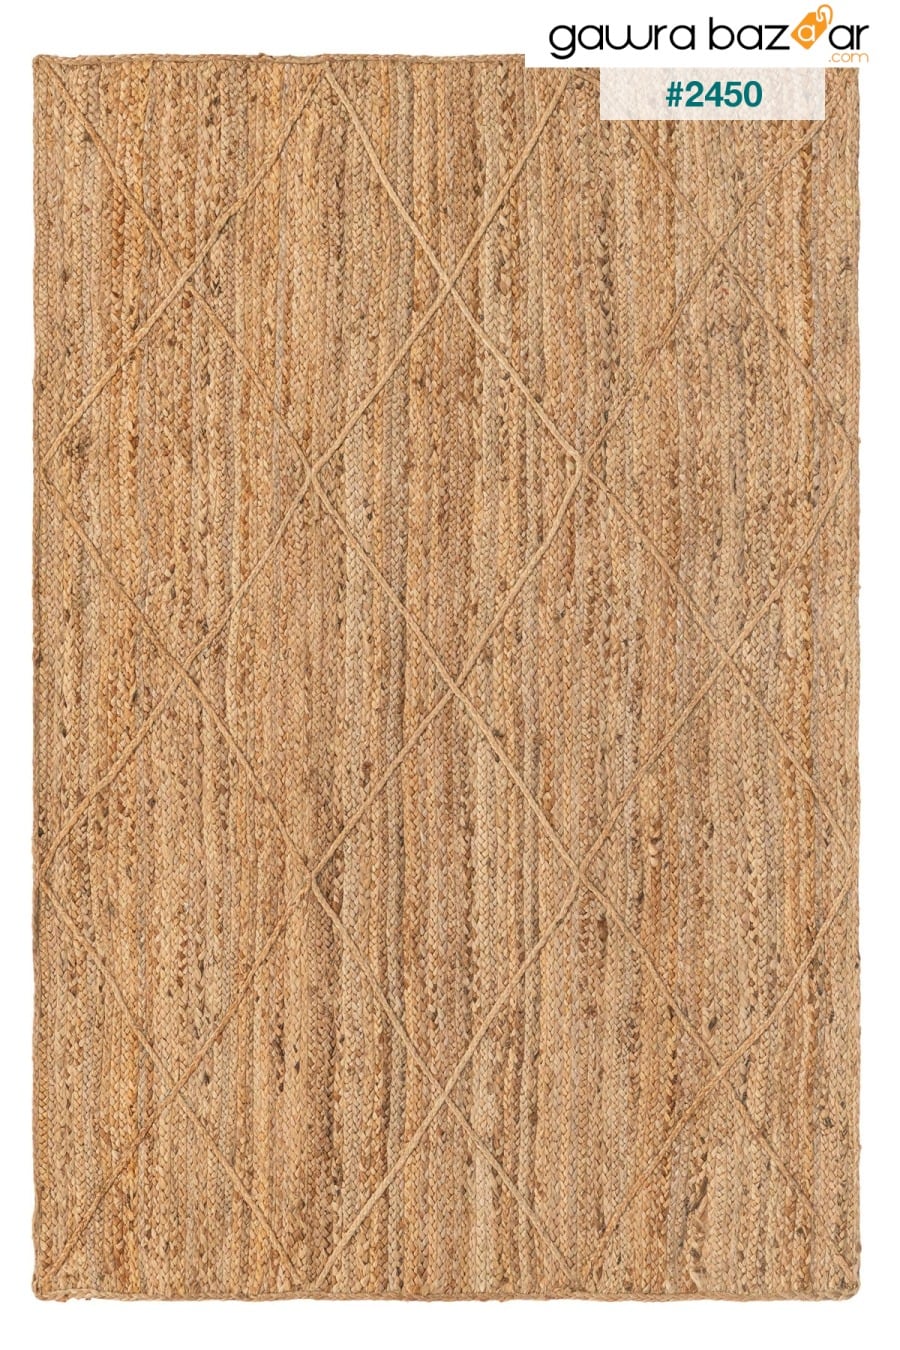 Natura Jute Carpet القش السجاد الطبيعي المنسوجة يدويا السجاد البساط عداء غرفة المعيشة المطبخ غرفة نوم 00019A Koza Halı 1